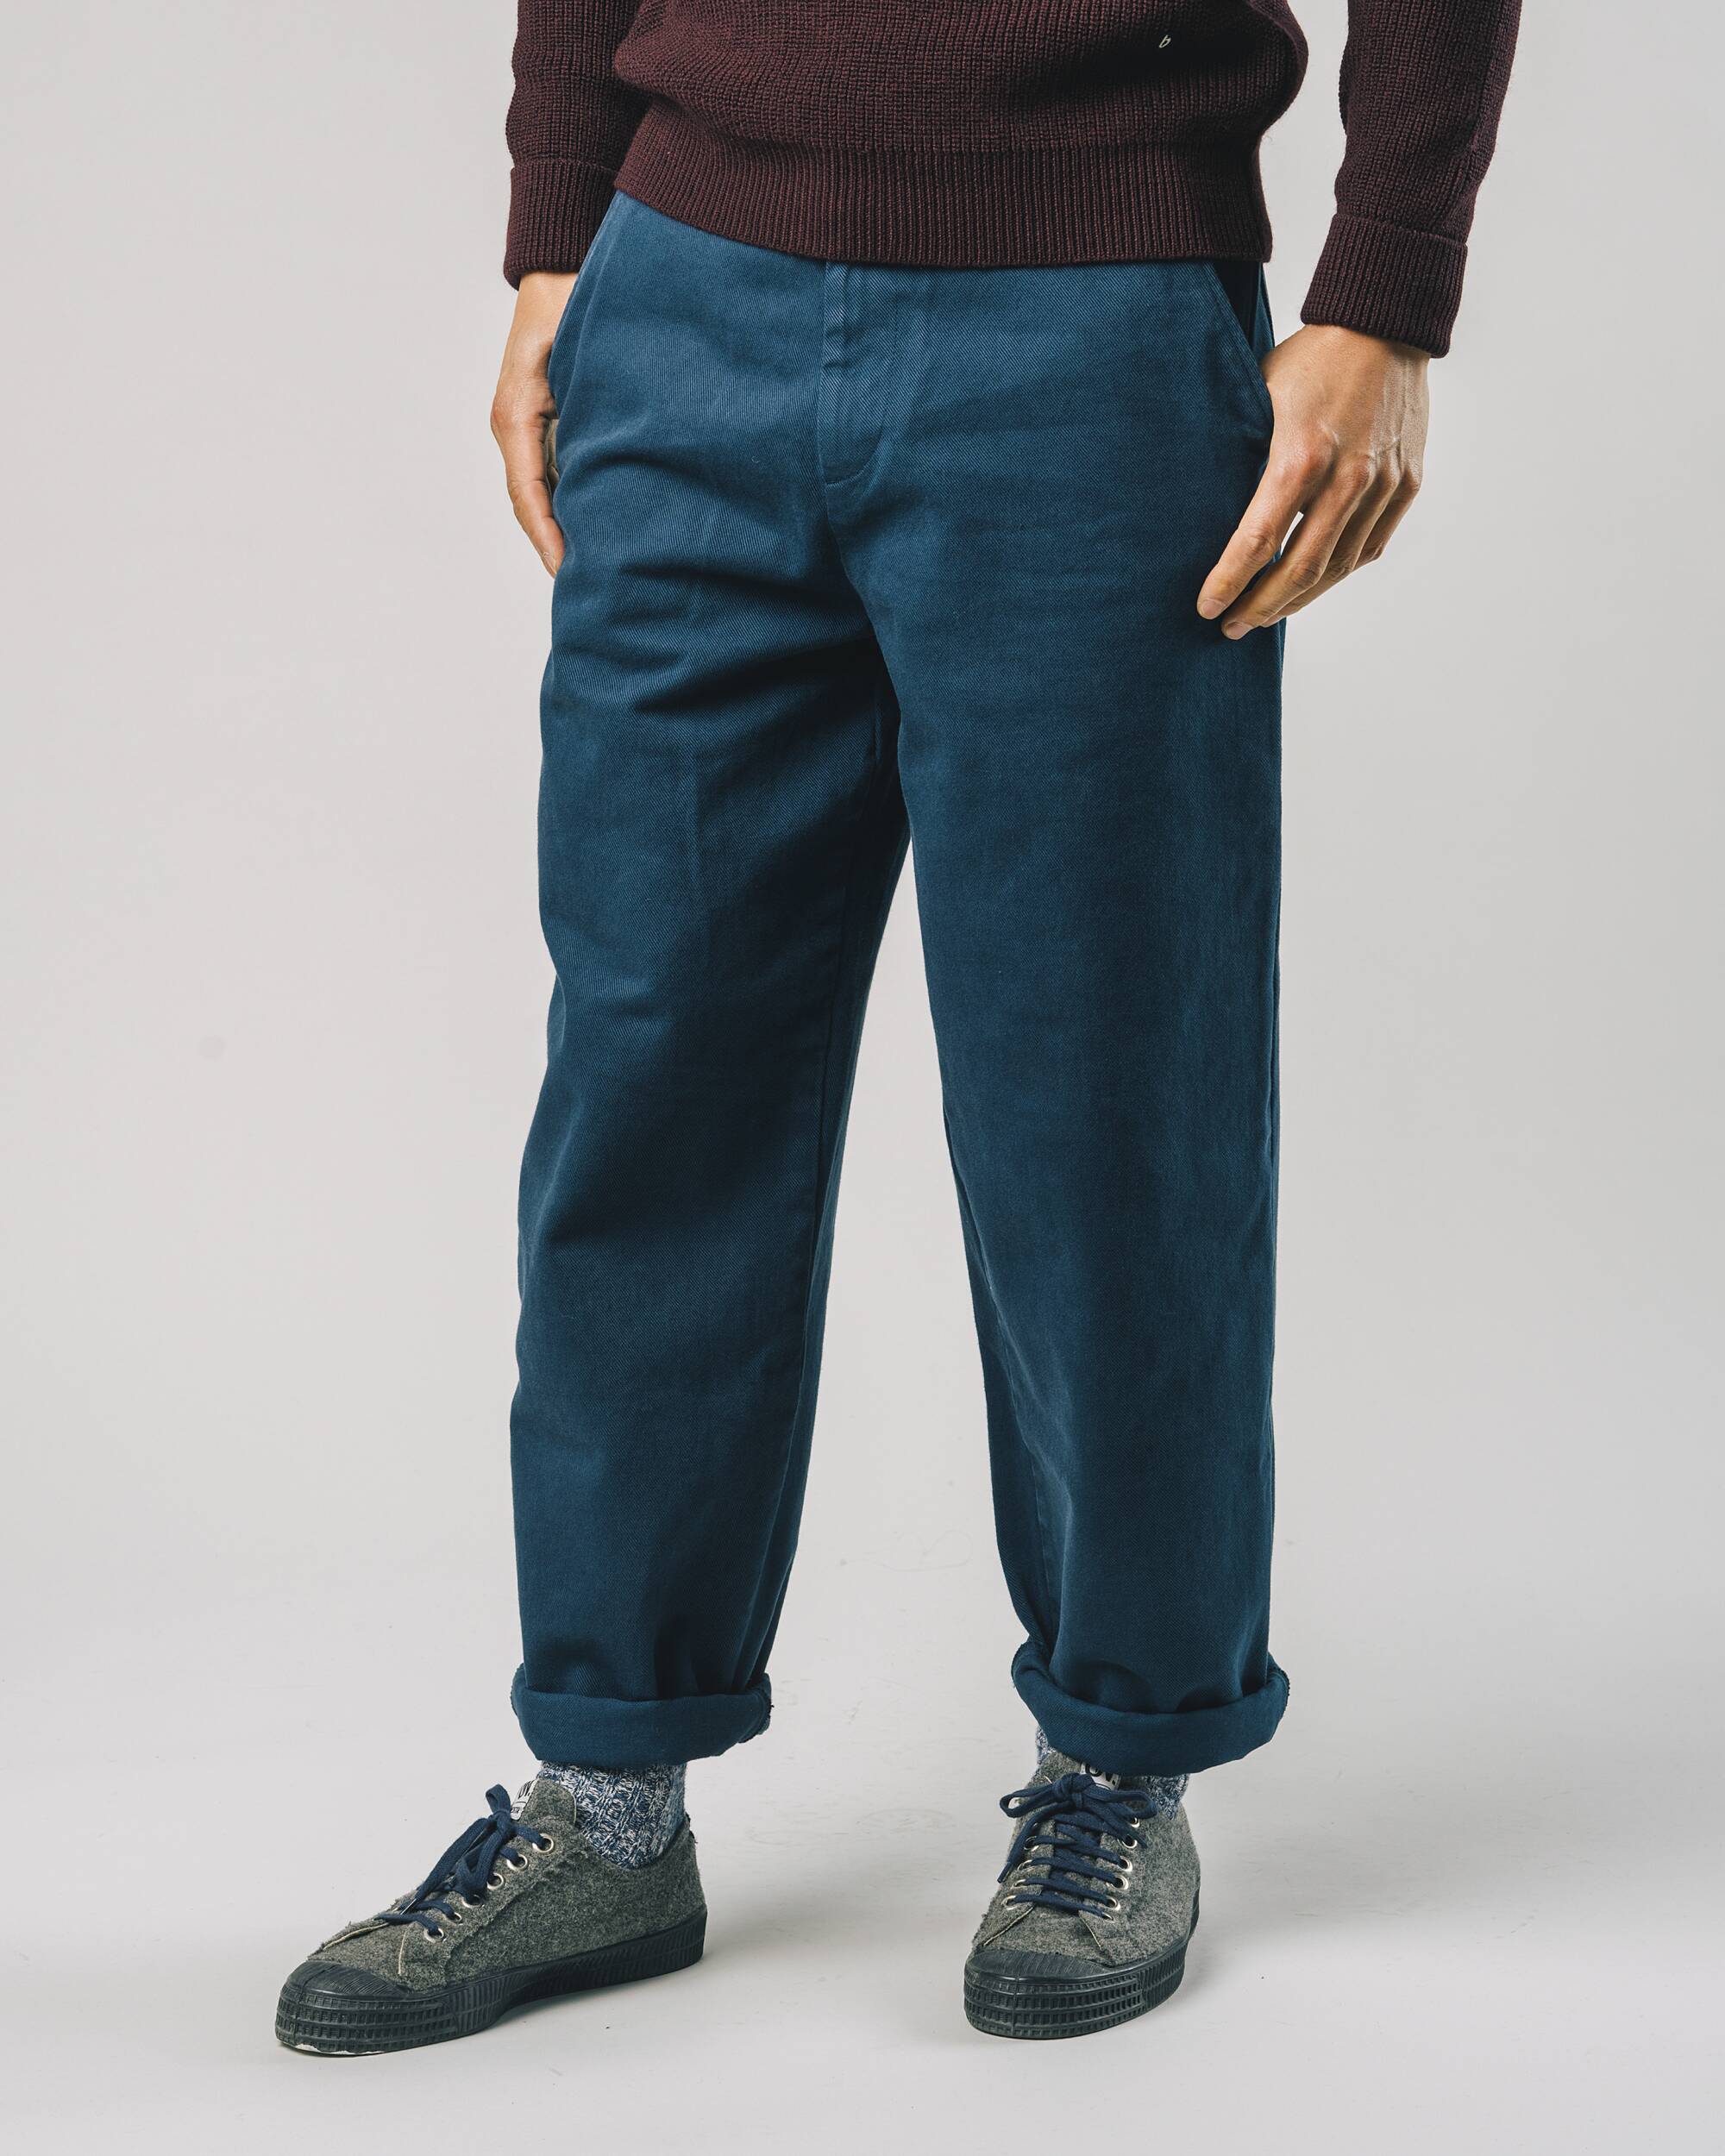 Oversized Workwear - Hose in Petrol - blau aus 100% Bio - Baumwolle von Brava Fabrics